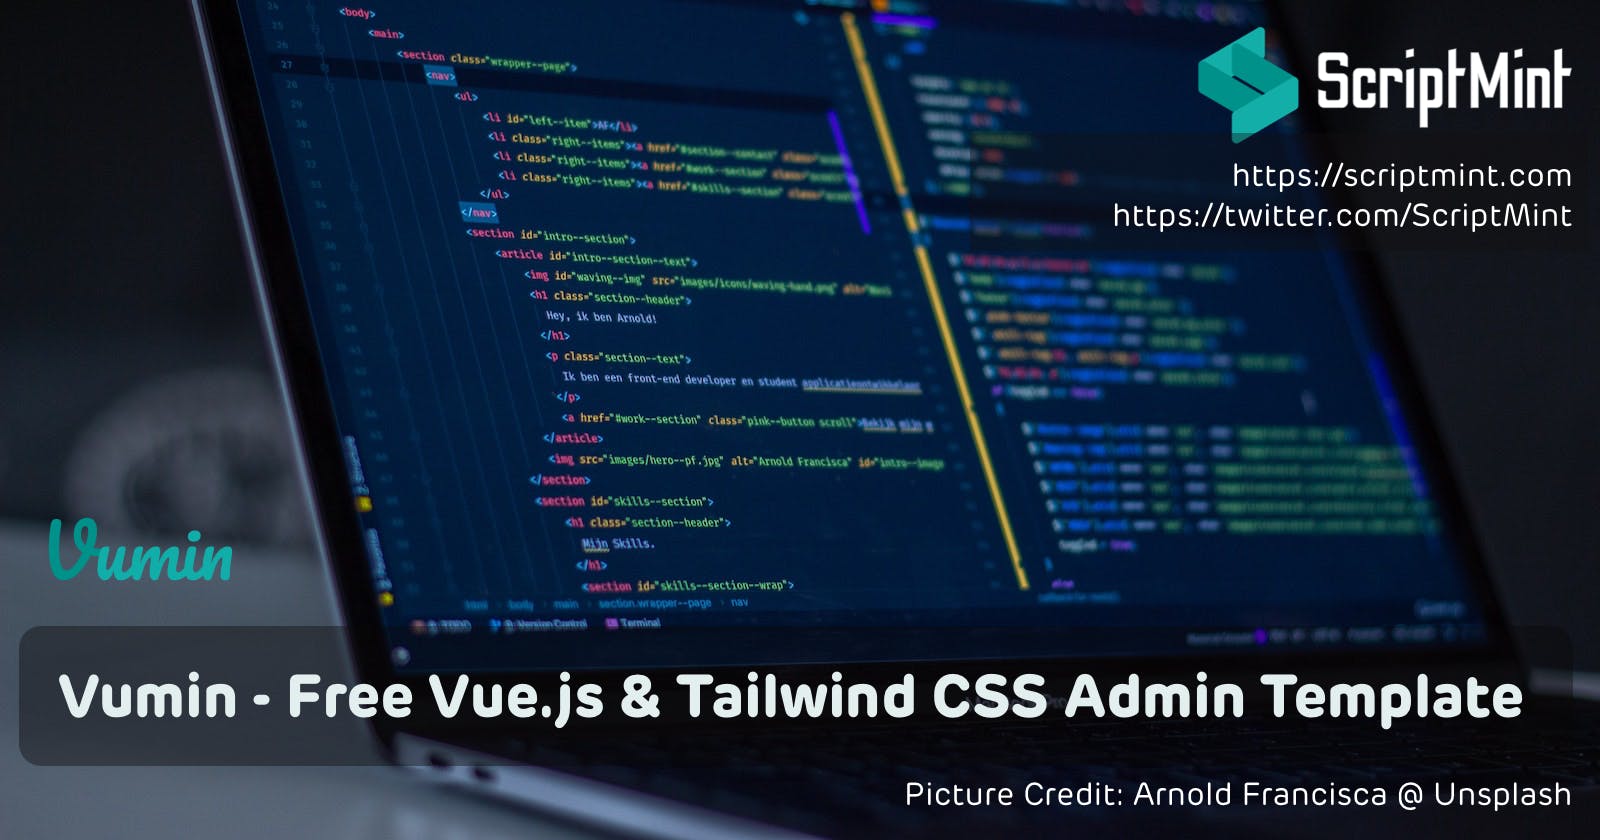 Vumin - Free Vue.js, Tailwind CSS Admin Template